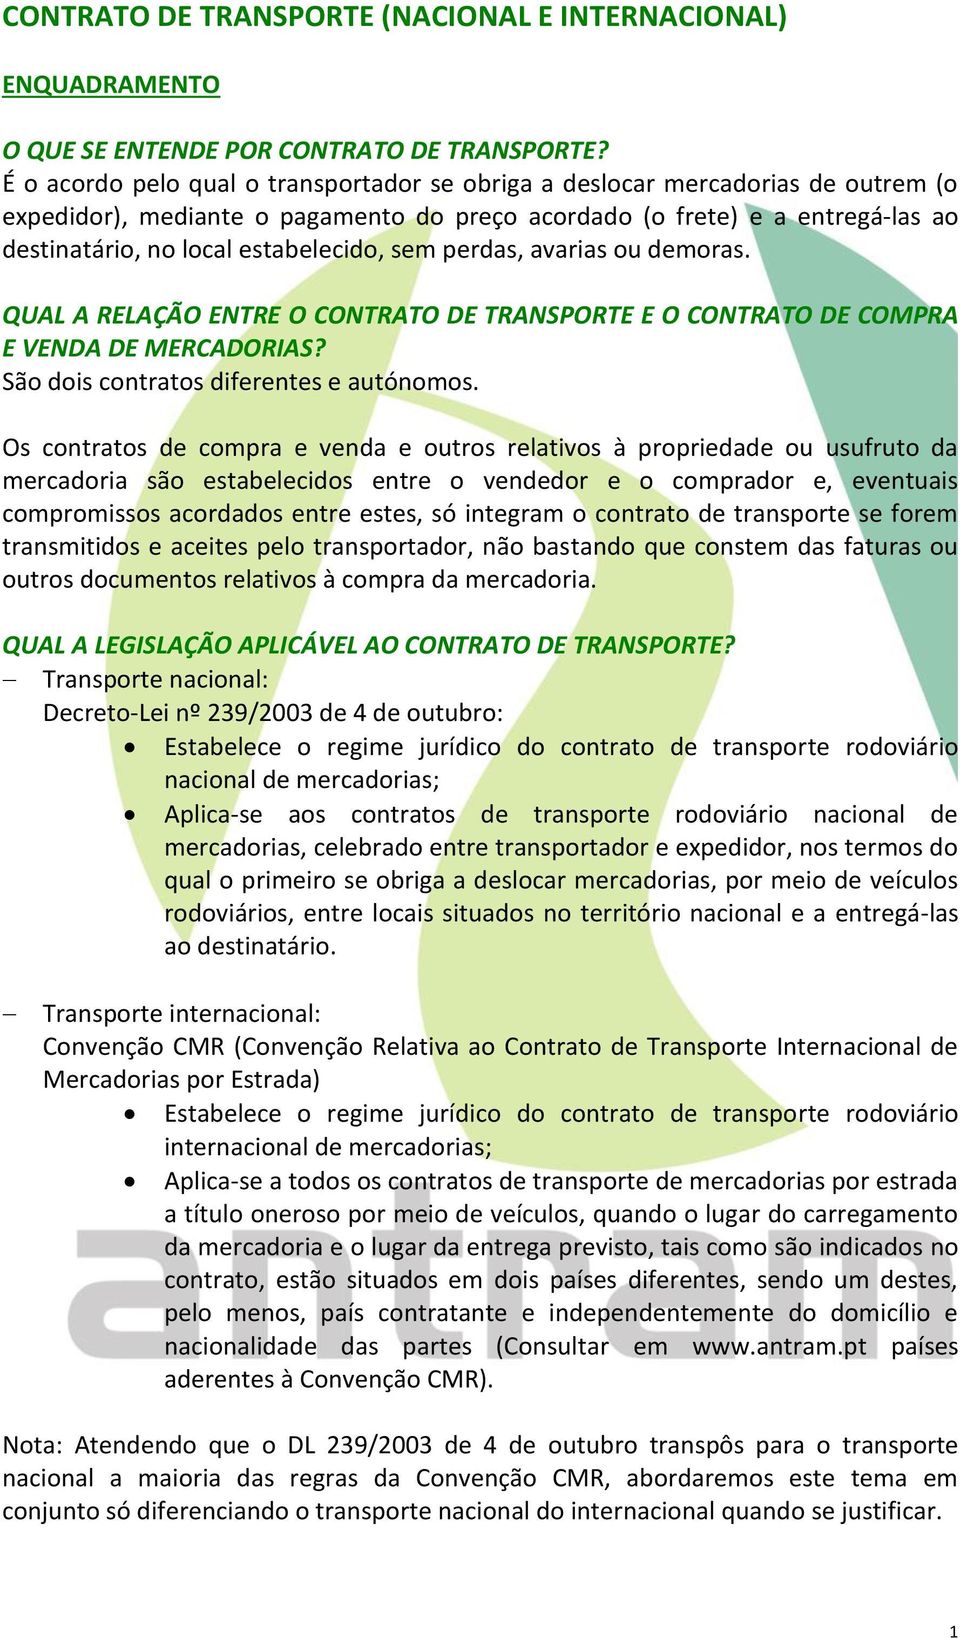 CONTRATO DE TRANSPORTE (NACIONAL E INTERNACIONAL) - PDF Free Download